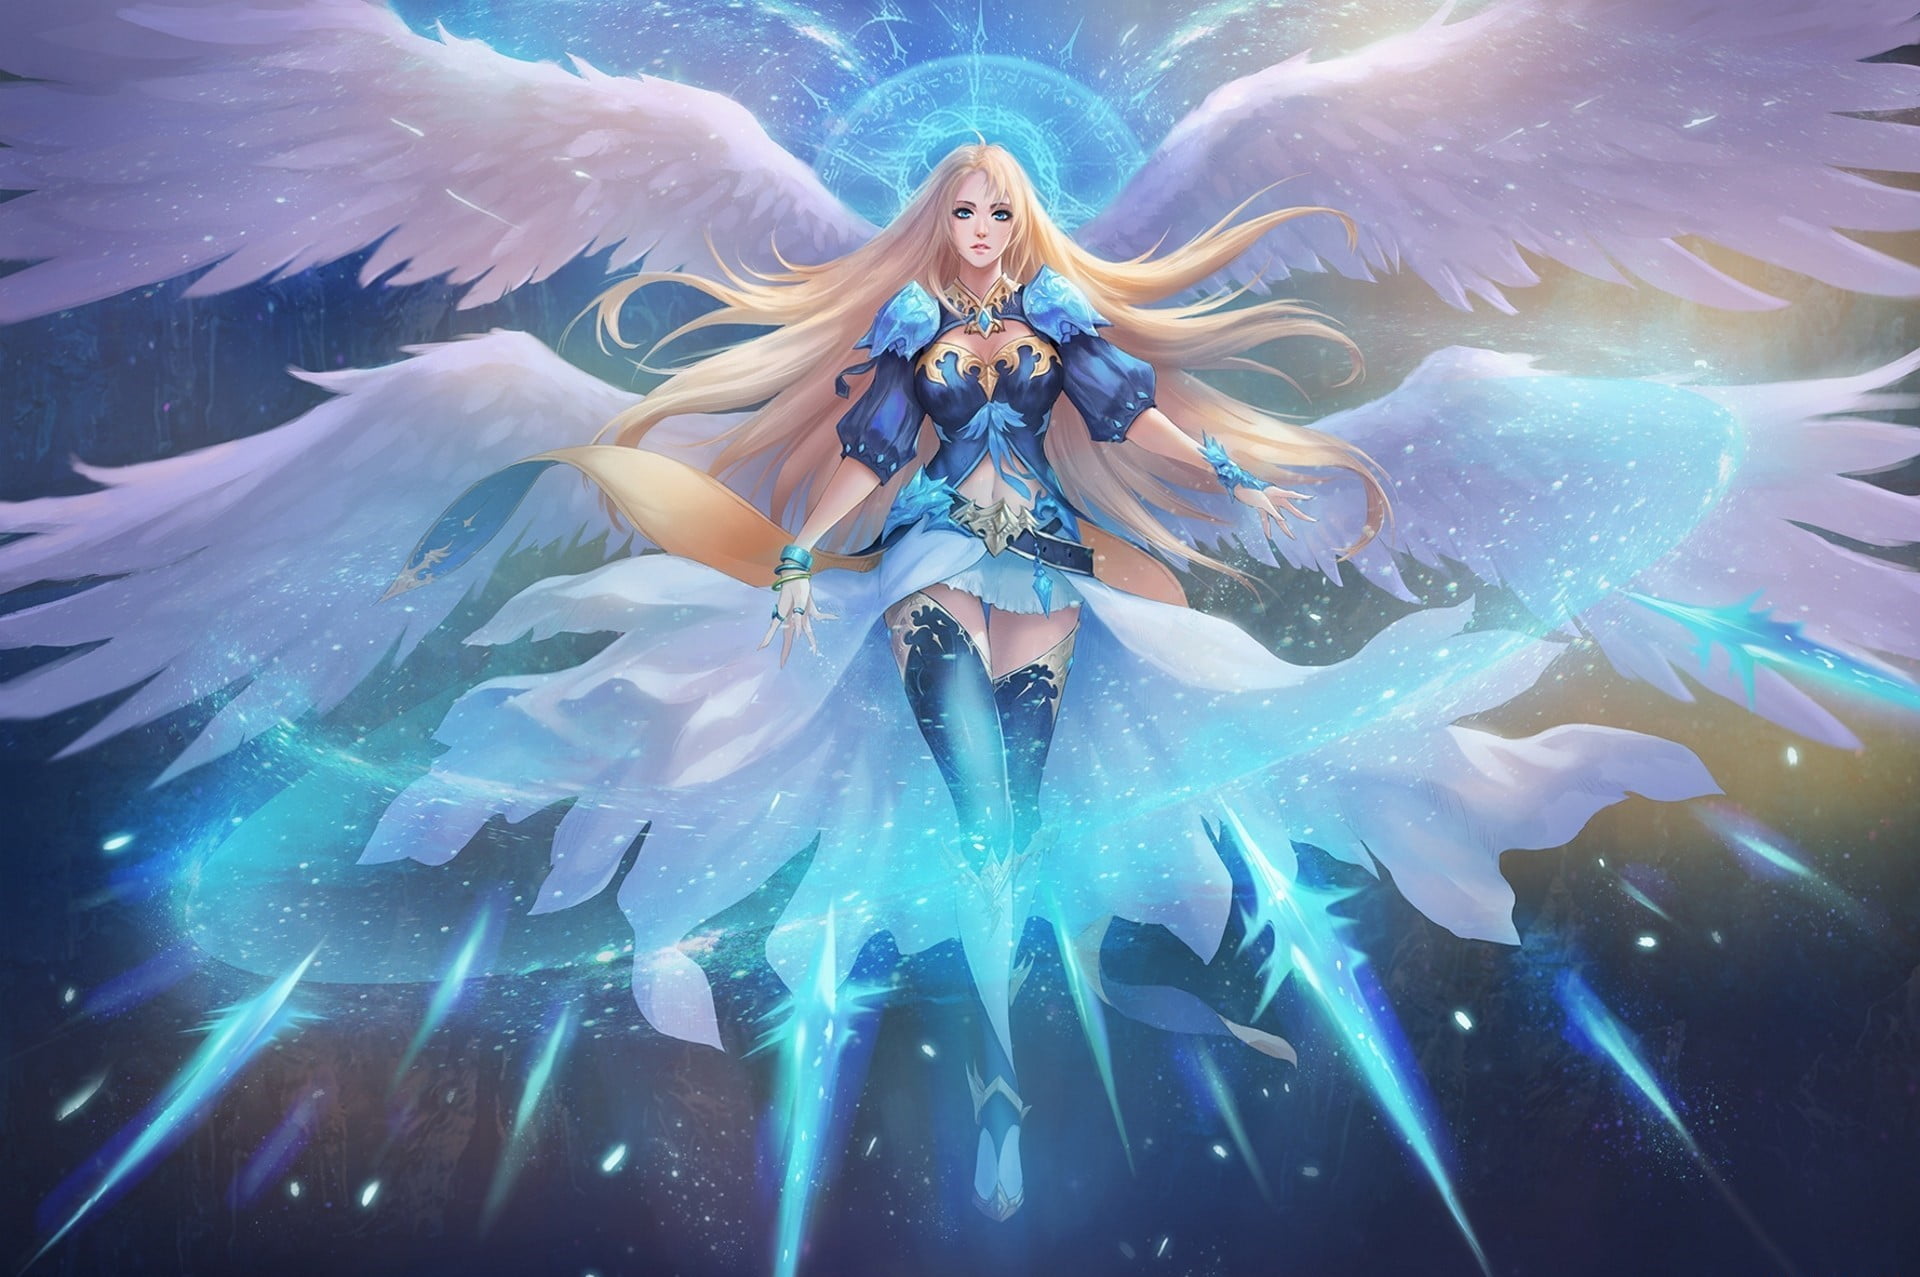 Blue-haired fantasy art goddess - wide 5